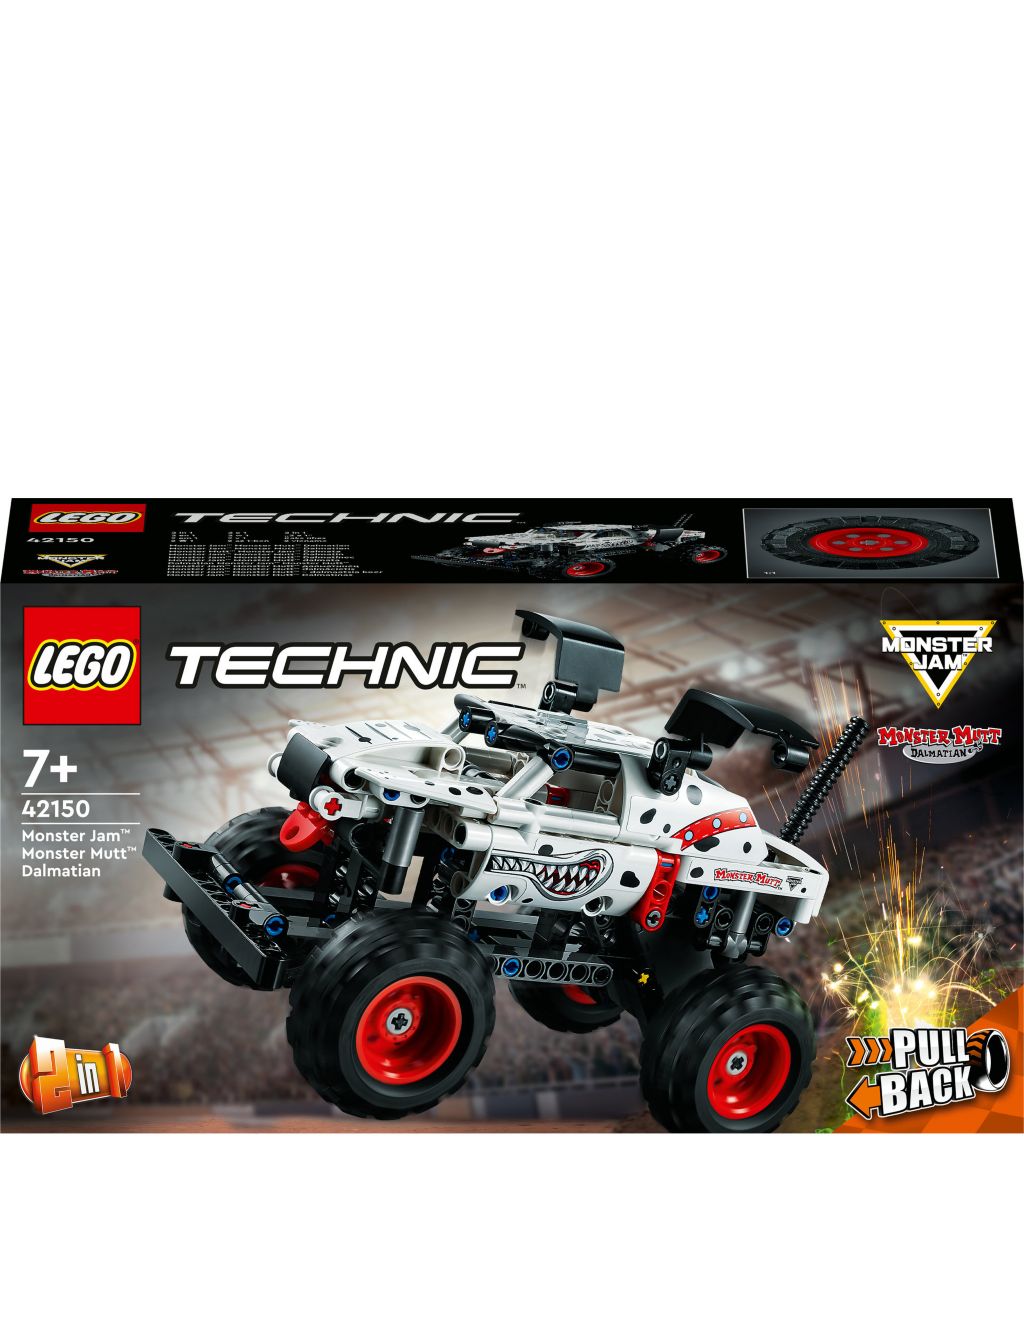 LEGO Technic Monster Jam Monster Mutt Dalmatian (7+ Yrs) image 3